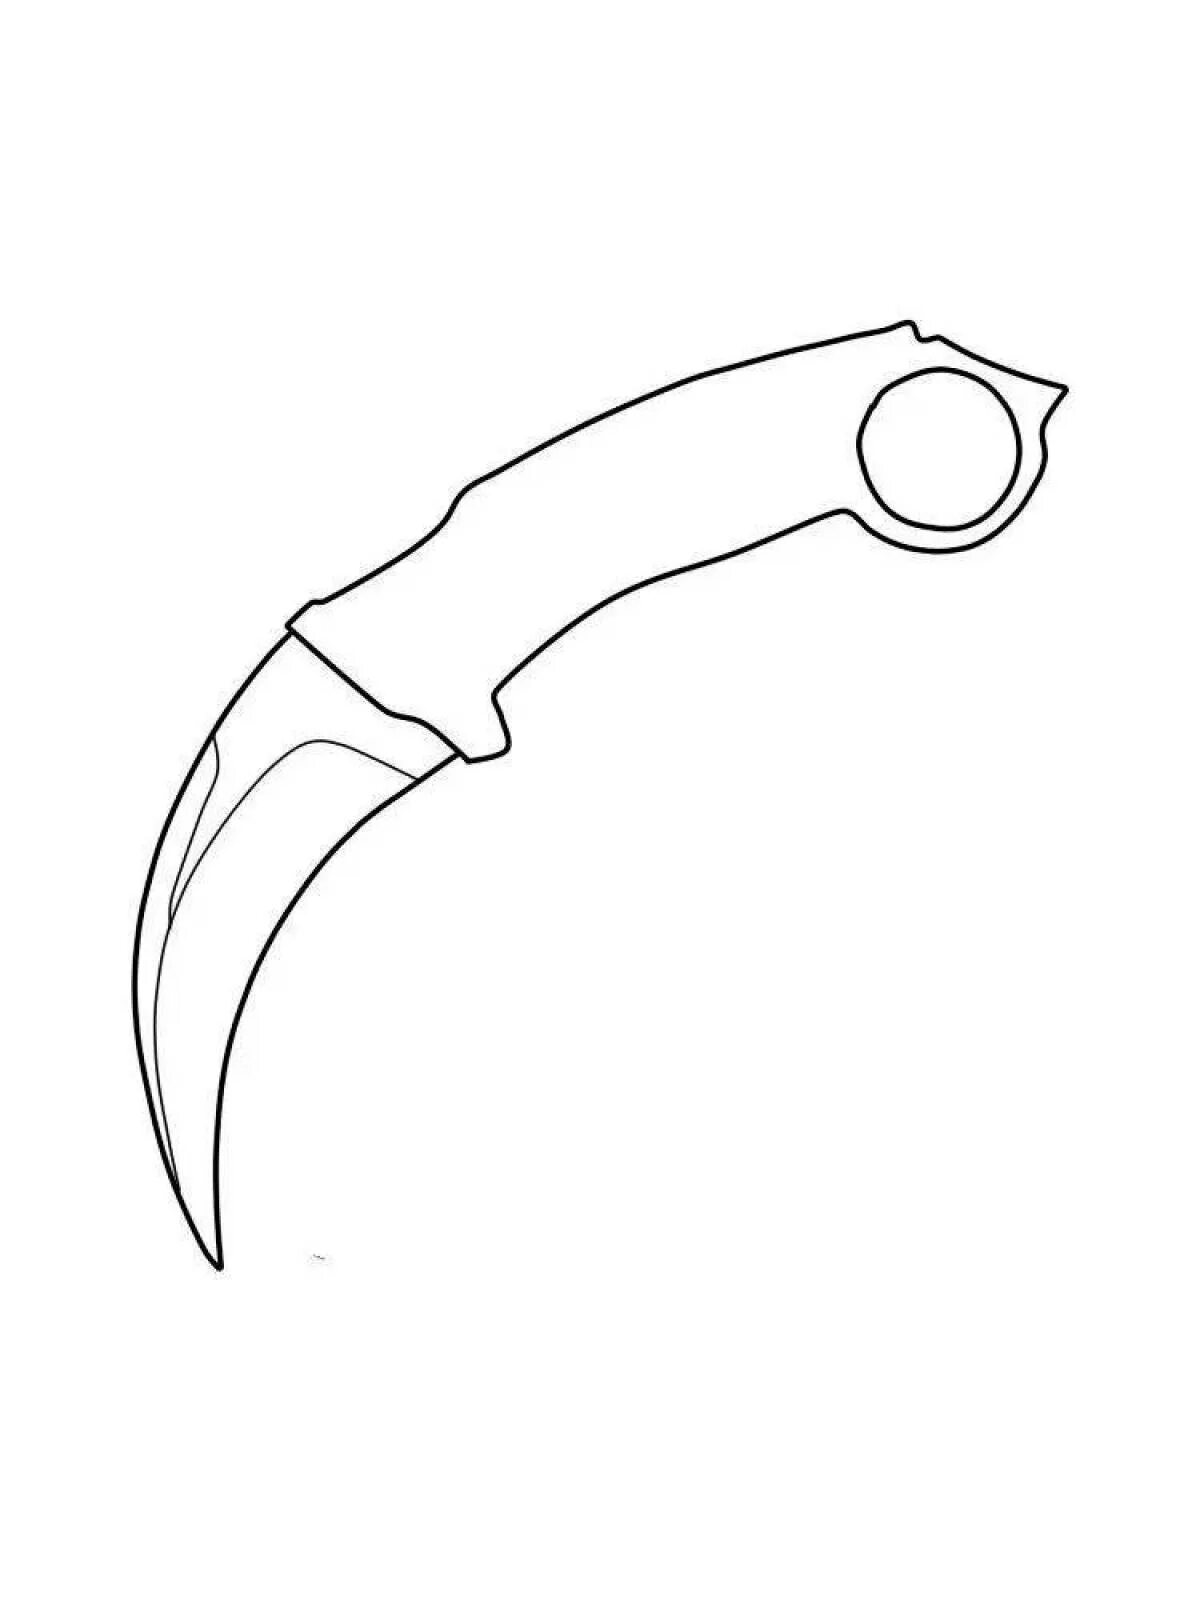 Раскраски КС го ножи керамбит. Керамбит КС го чертеж. Нож керамбит из стандофф 2 раскраска. Ножи КС го чертежи керамбит. Ножи из standoff рисунок